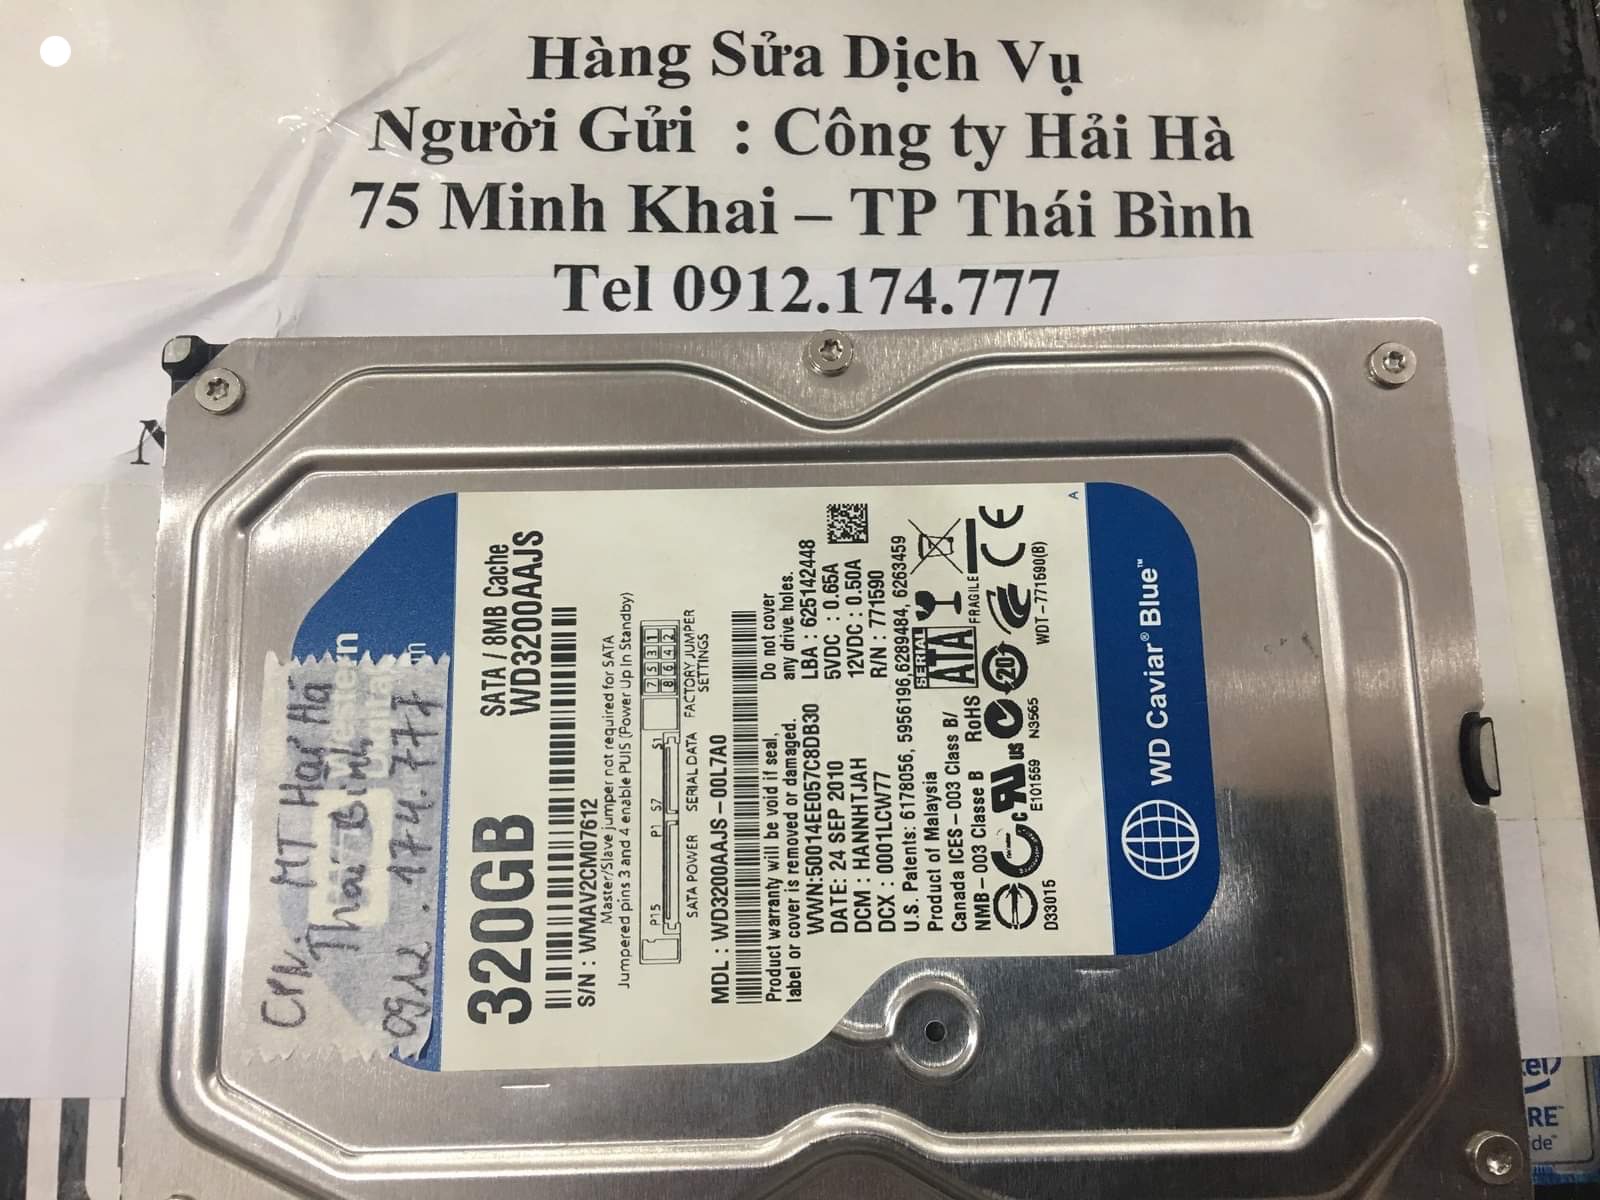 Cứu dữ liệu ổ cứng Western 320GB đầu đọc kém tại Thái Bình 22/10/2020 - cuumaytinh